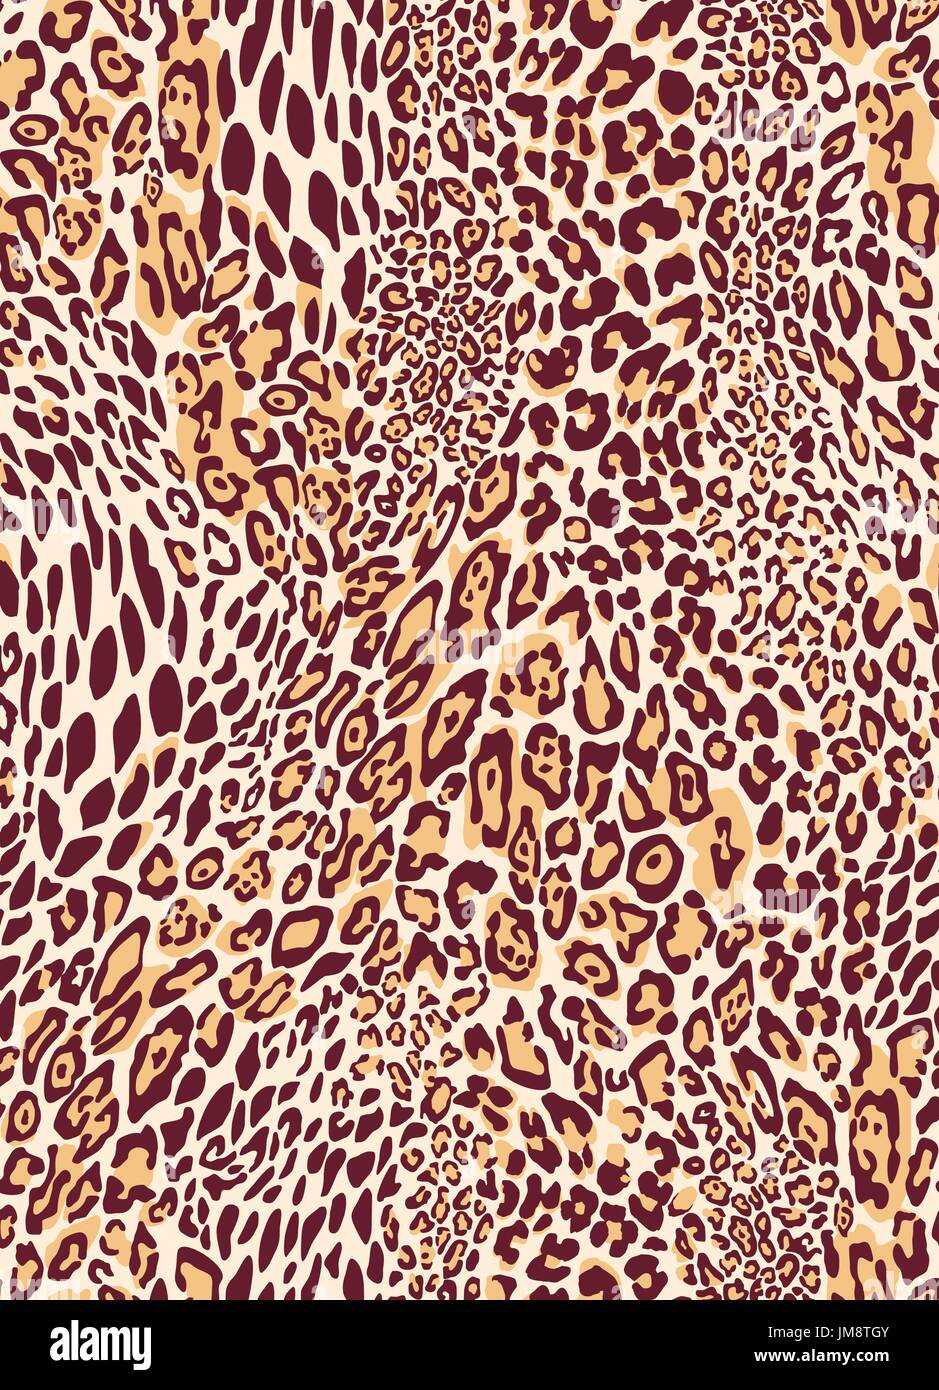 Leopard classic transparente texture pattern. Illustration vecteur EPS 10 Illustration de Vecteur